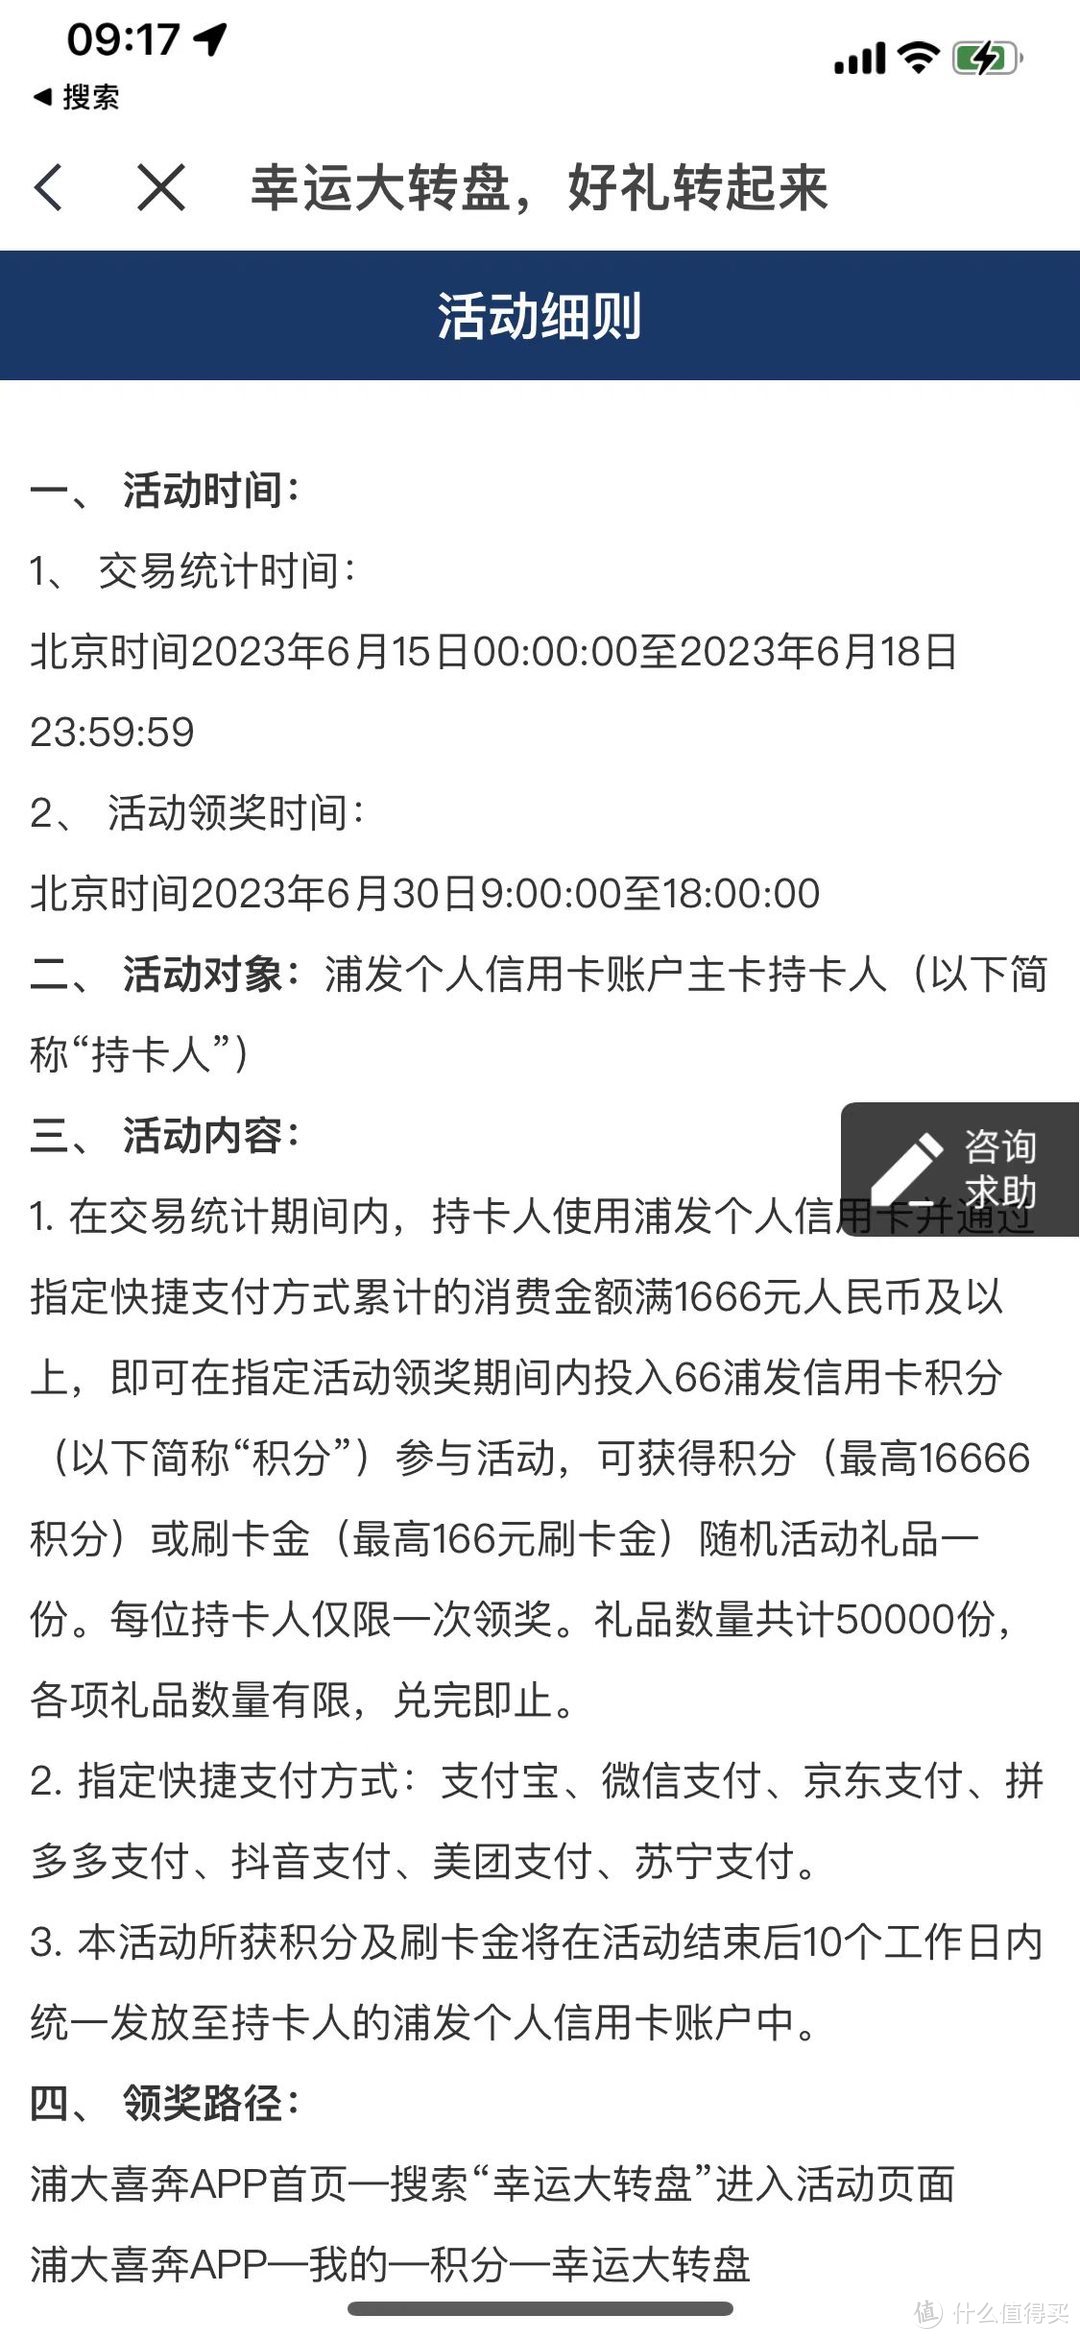 浦发新活动中了6元刷卡金！你们中了多少？中国上海浦东发展银行信用卡支付优惠YYDS！全国地区可参与！